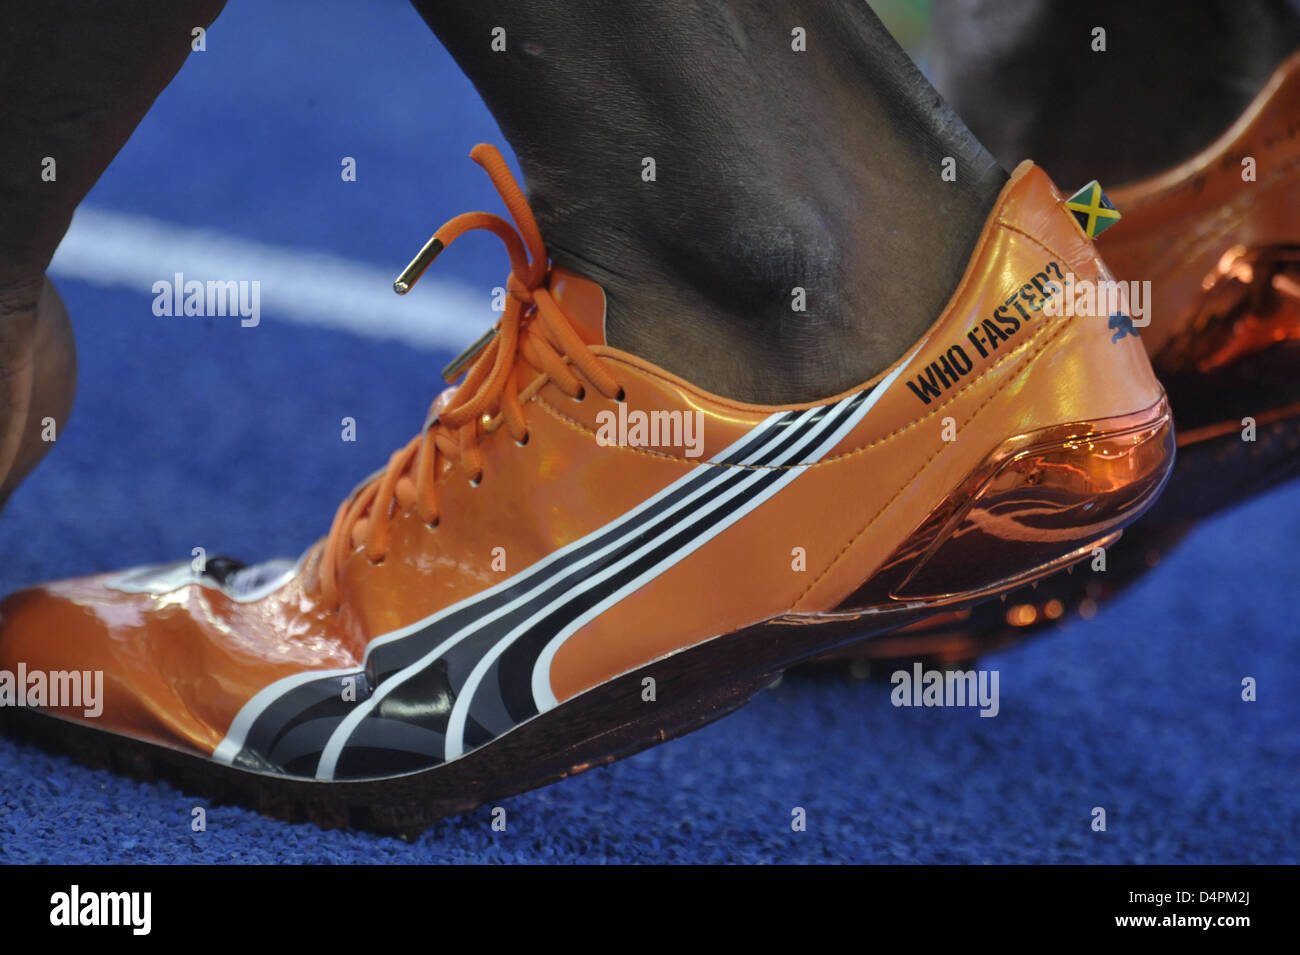 Les chaussures de Jamaican Usain Bolt en photo avant de la men ?s 100m lors  de la 12e finale des Championnats du monde IAAF d'athlétisme de Berlin,  Allemagne, 16 août 2009. Bolt